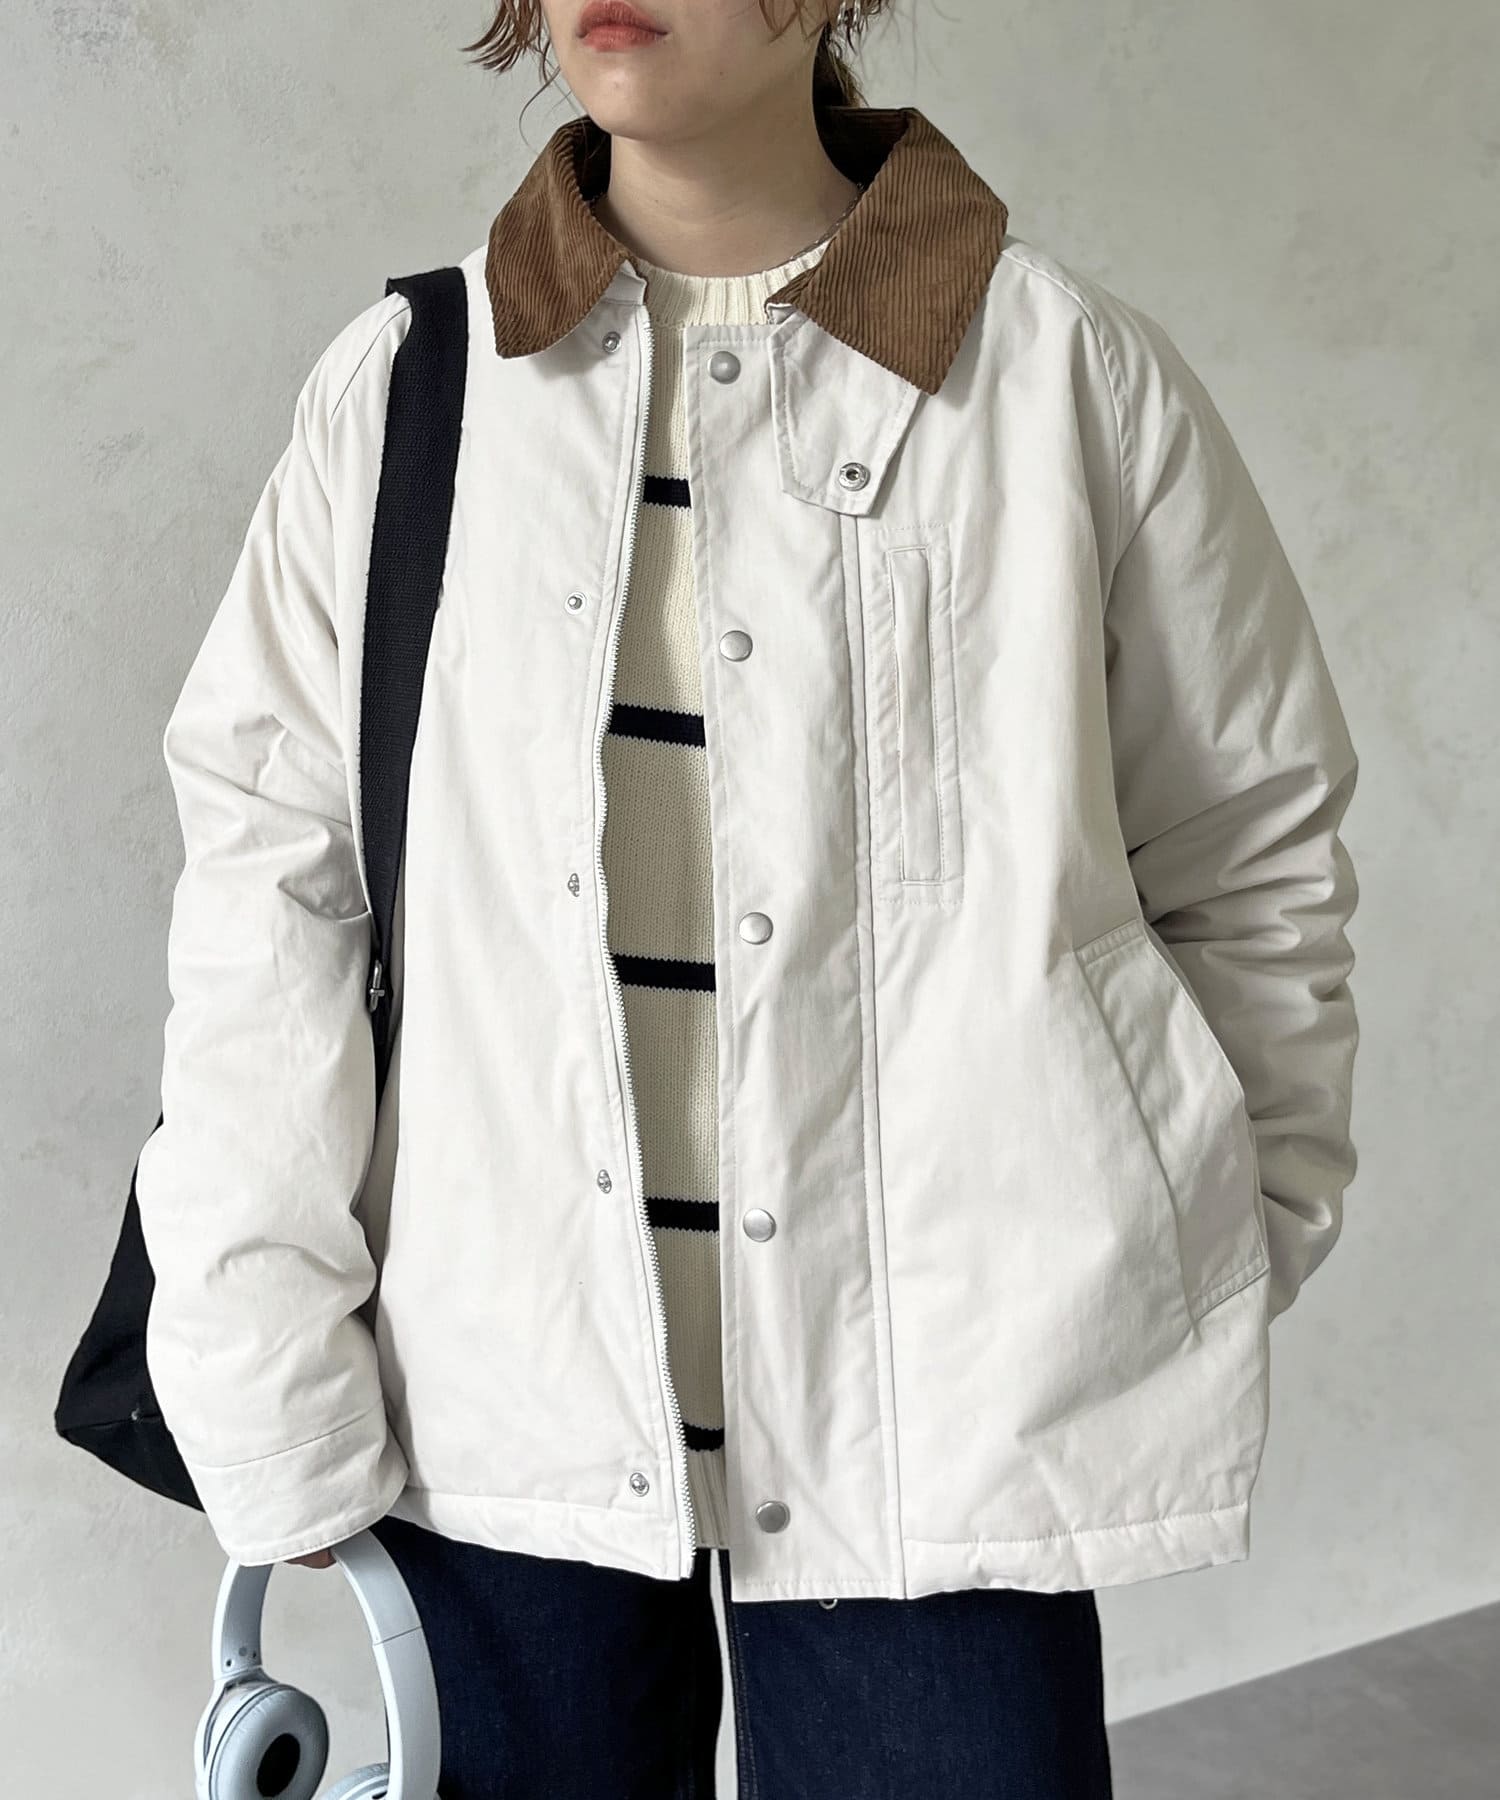 【良いデザイン】 ハンティングジャケット アイボリー白 襟コーデュロイトグル